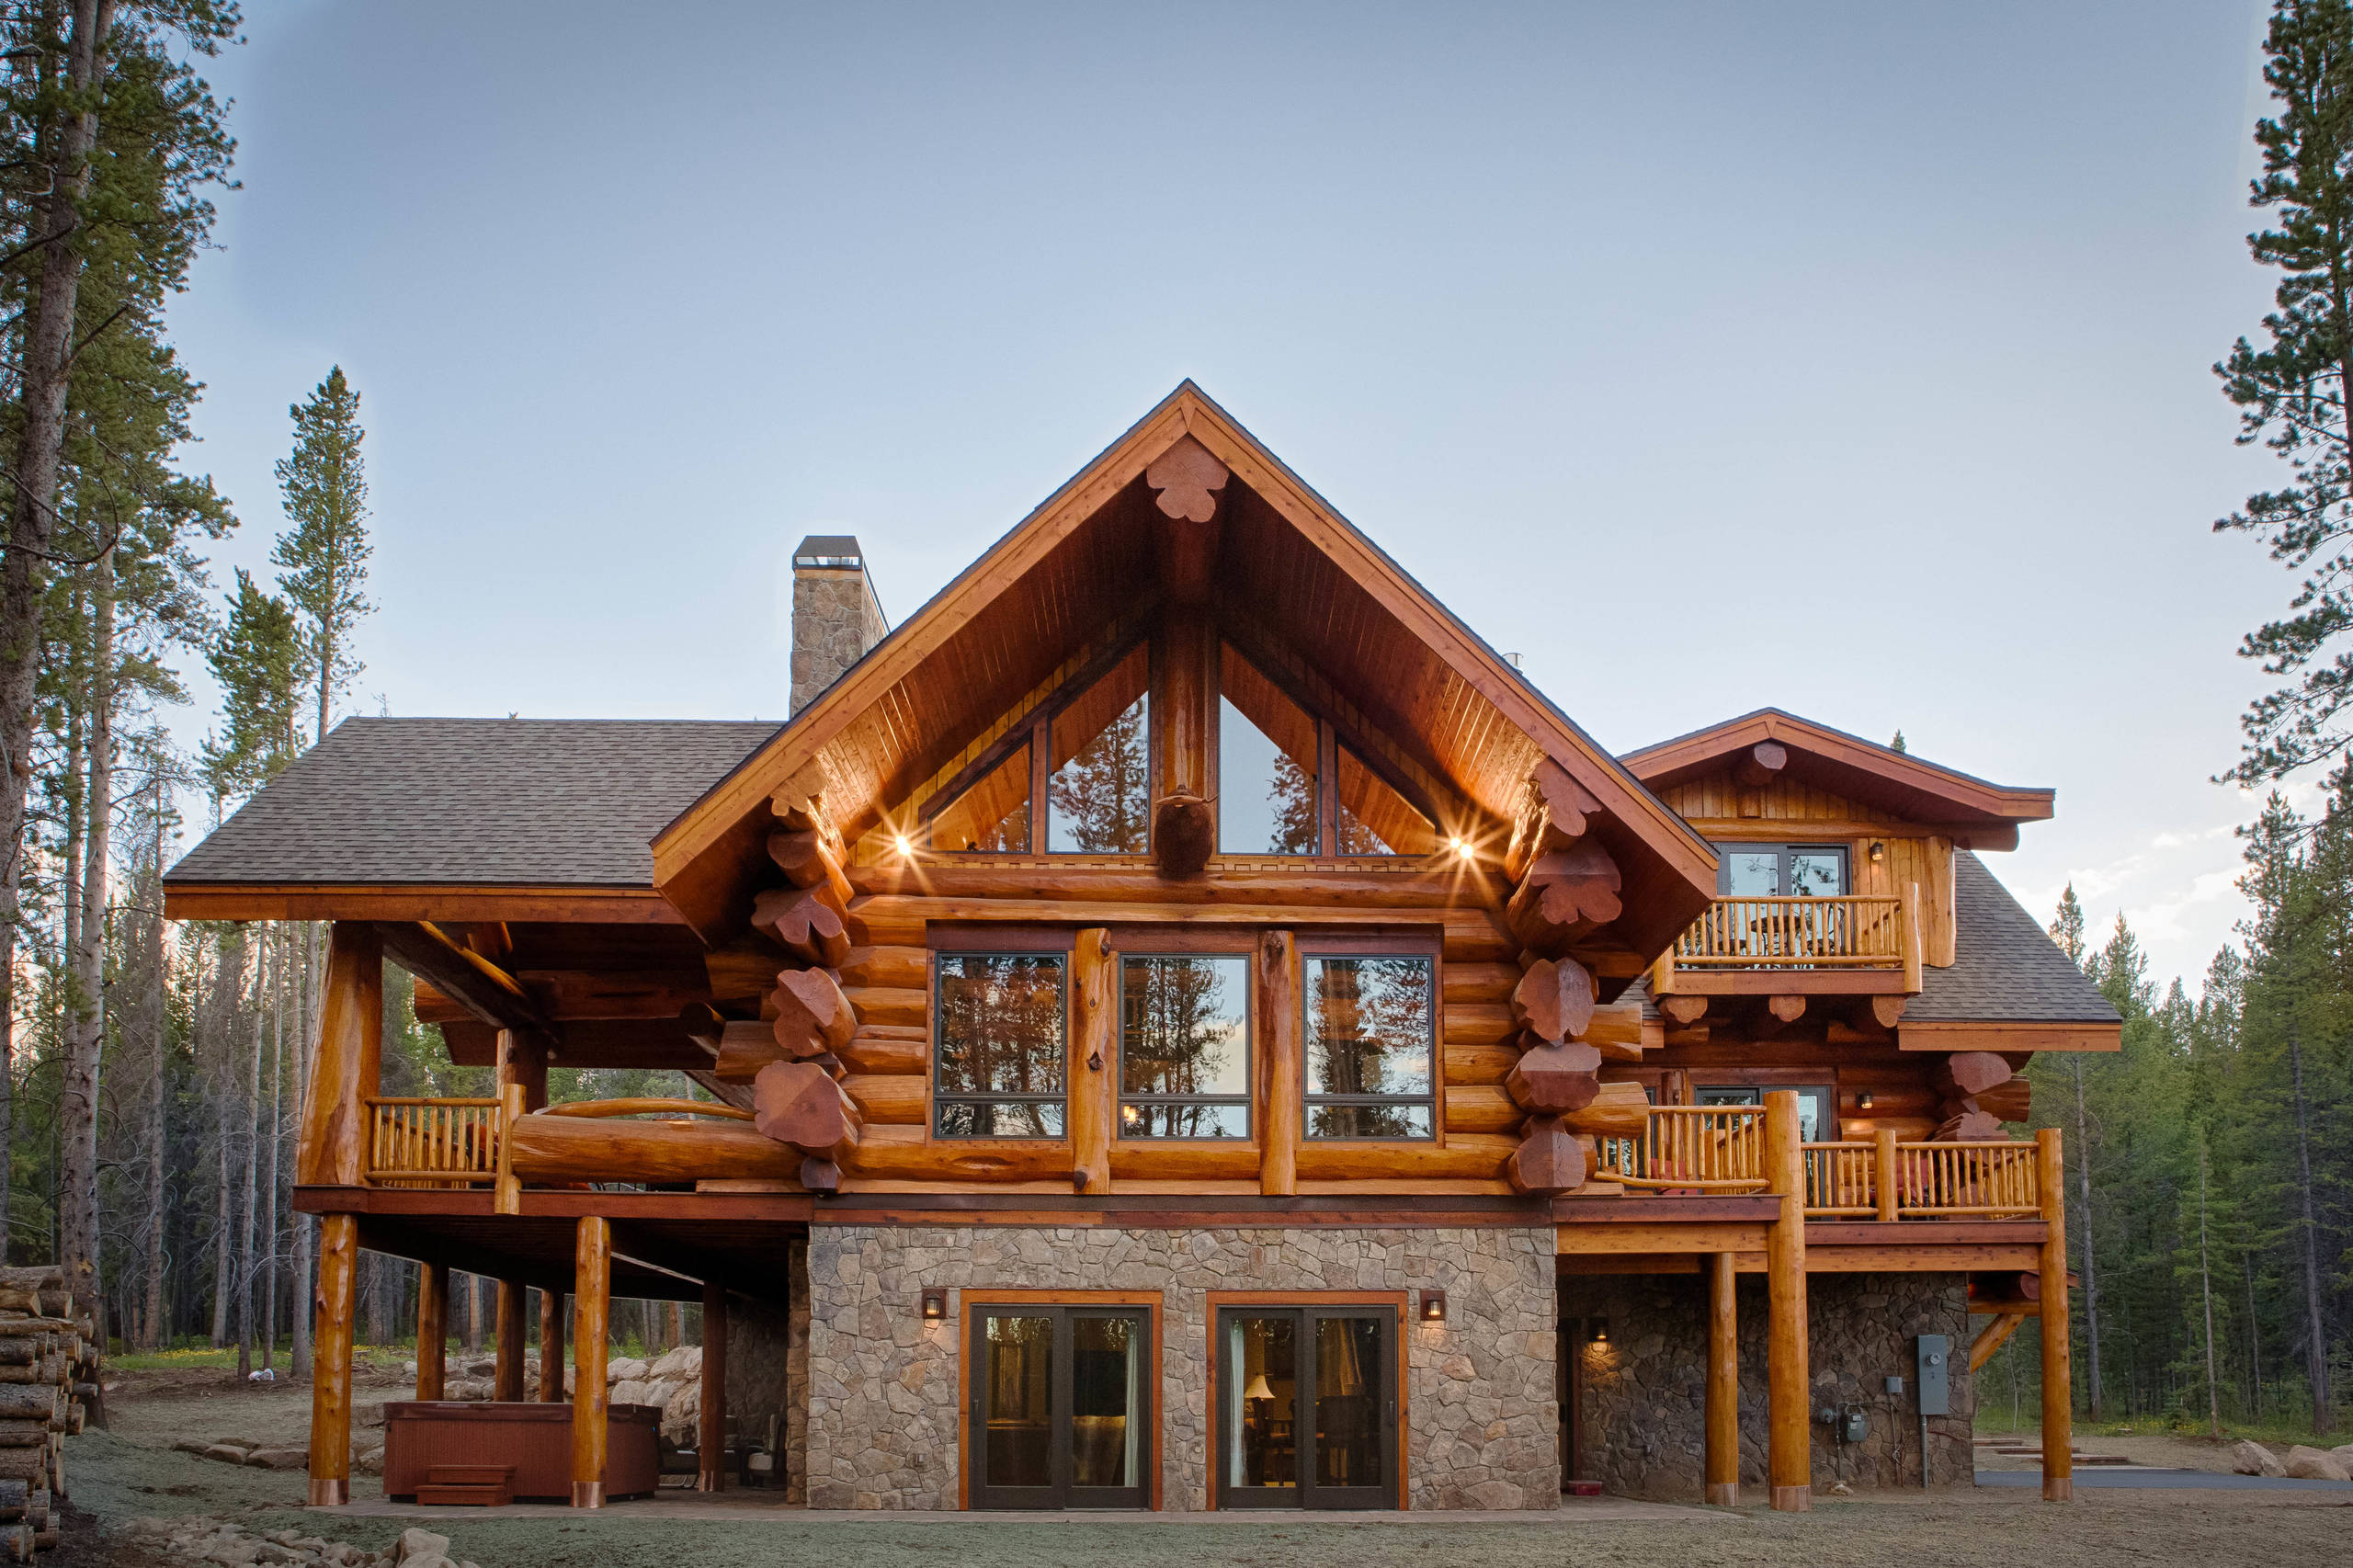 13 Parade Home Moose Ridge Cabin Log Home Rustic Exterior Denver By Mountain Log Homes Interiors Houzz